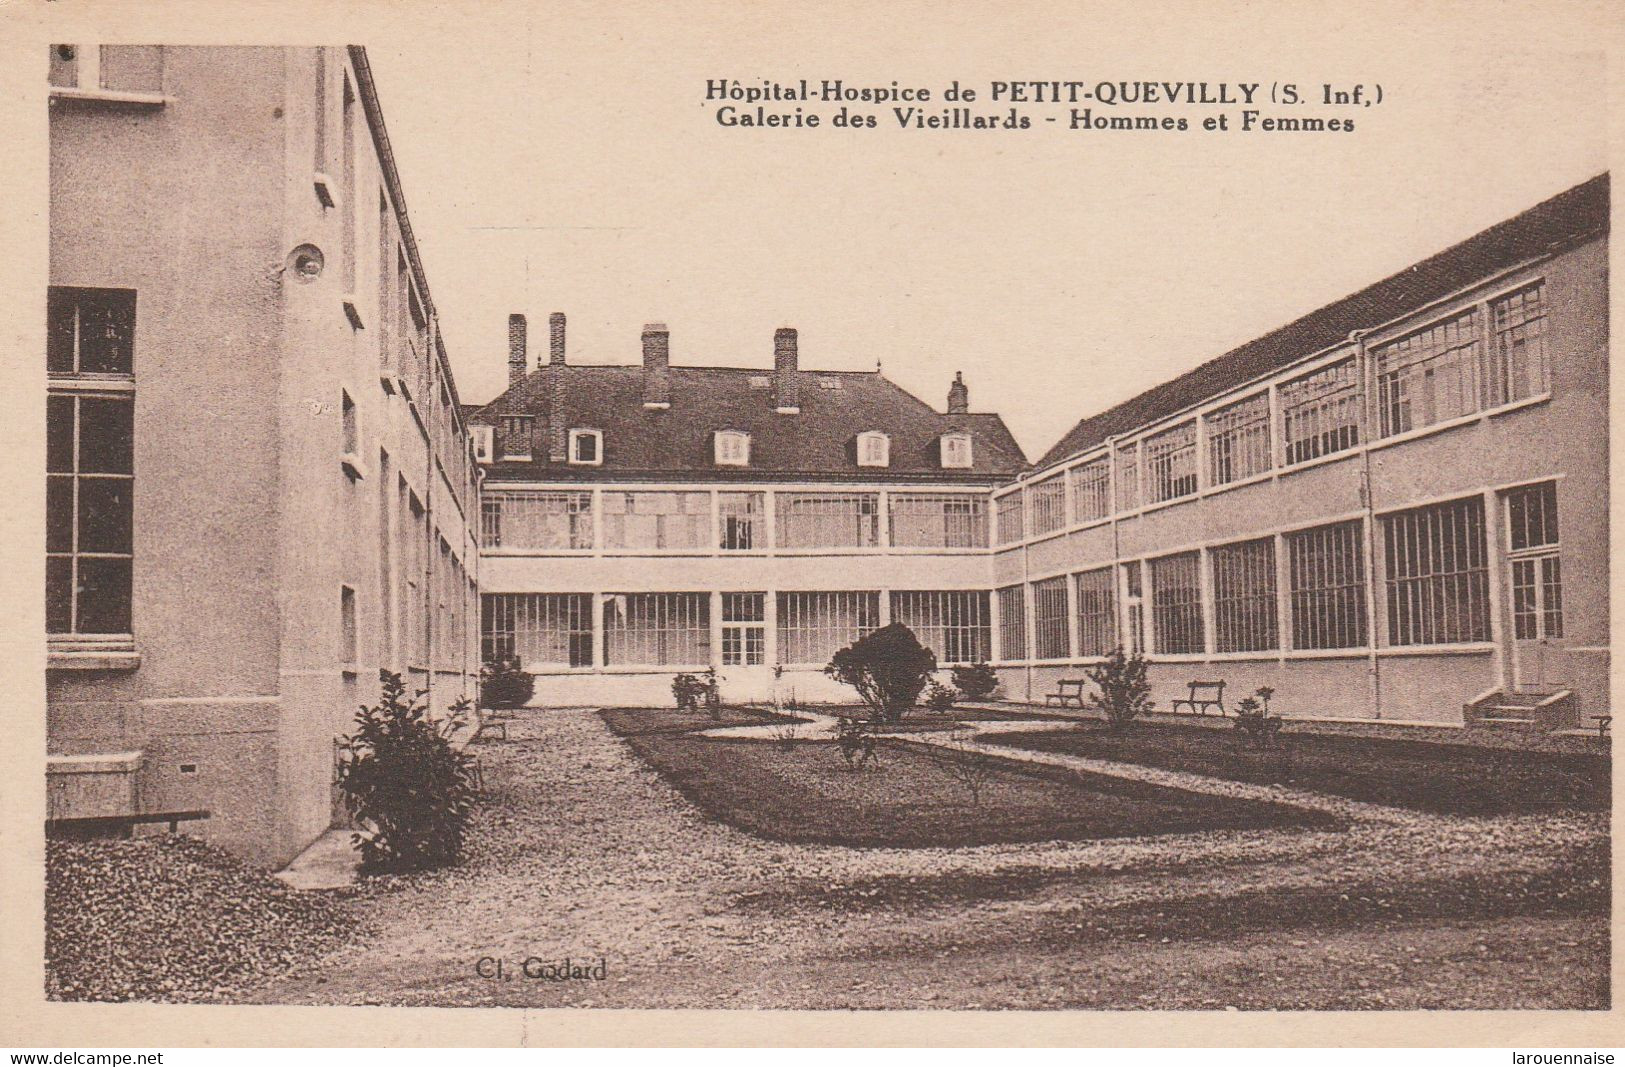 76 - PETIT QUEVILLY - Hopital Hospice De Petit Quevilly - Galerie Des Vieillards - Hommes Et Femmes - Le Petit-Quevilly